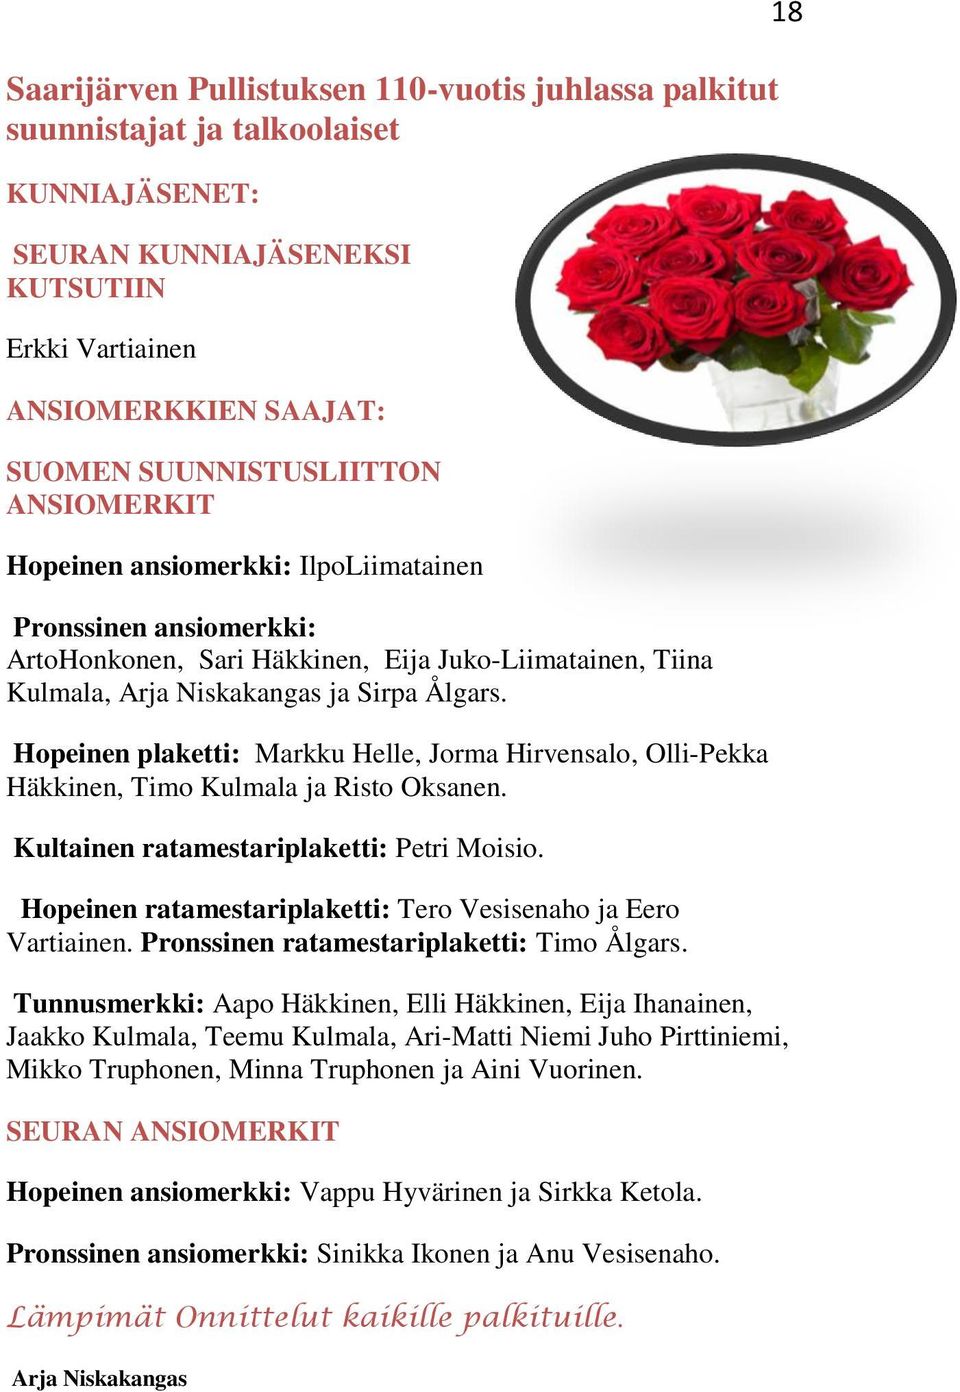 Hopeinen plaketti: Markku Helle, Jorma Hirvensalo, Olli-Pekka Häkkinen, Timo Kulmala ja Risto Oksanen. Kultainen ratamestariplaketti: Petri Moisio.